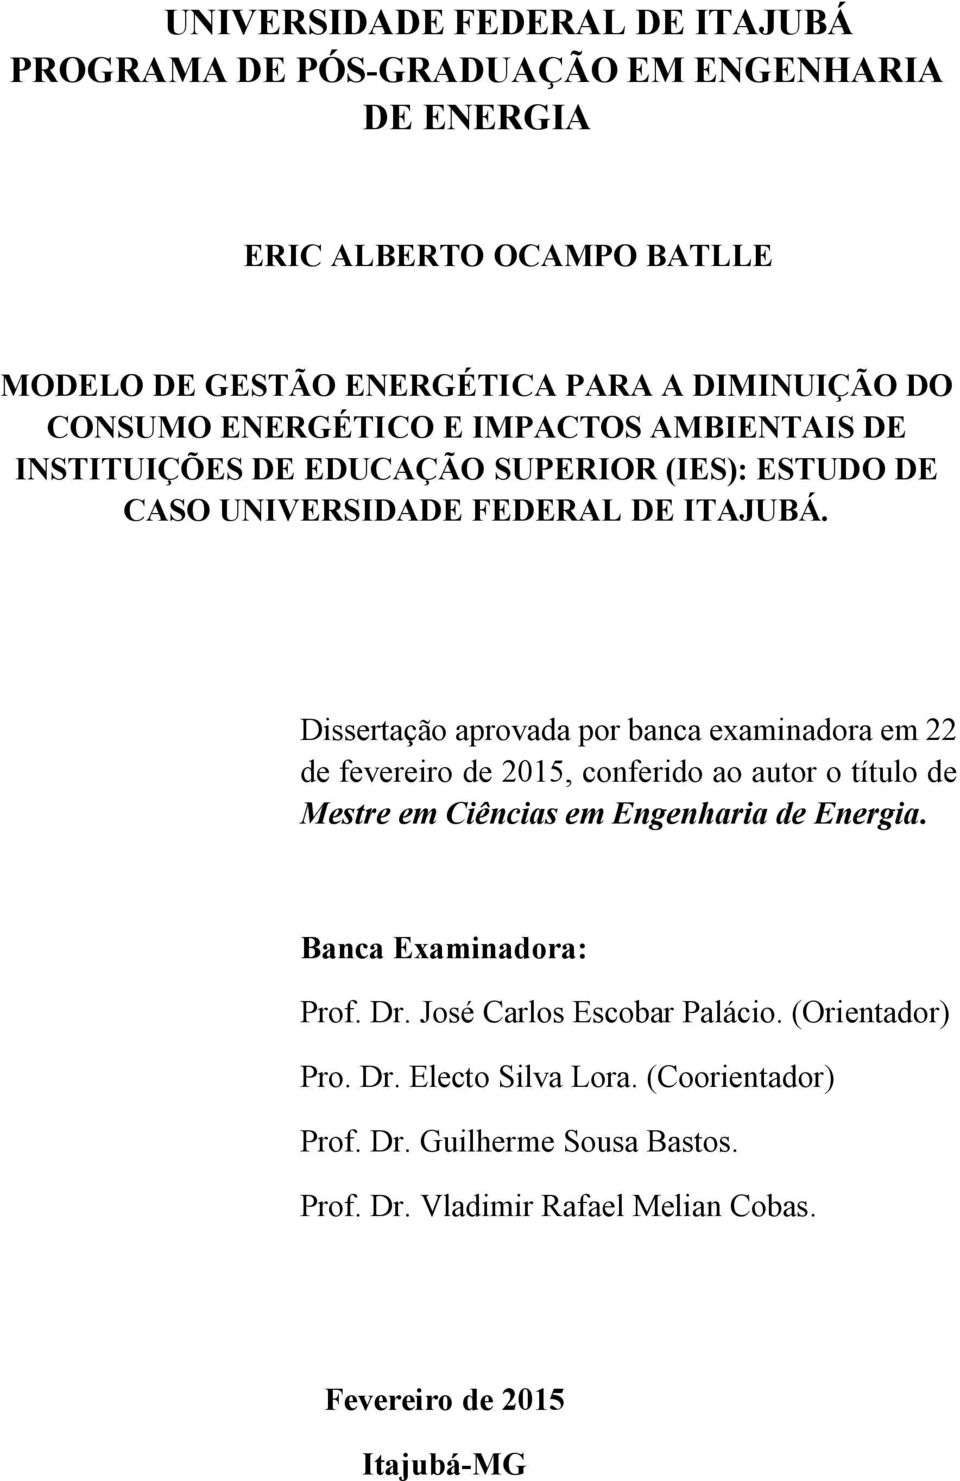 Dissertação aprovada por banca examinadora em 22 de fevereiro de 2015, conferido ao autor o título de Mestre em Ciências em Engenharia de Energia.